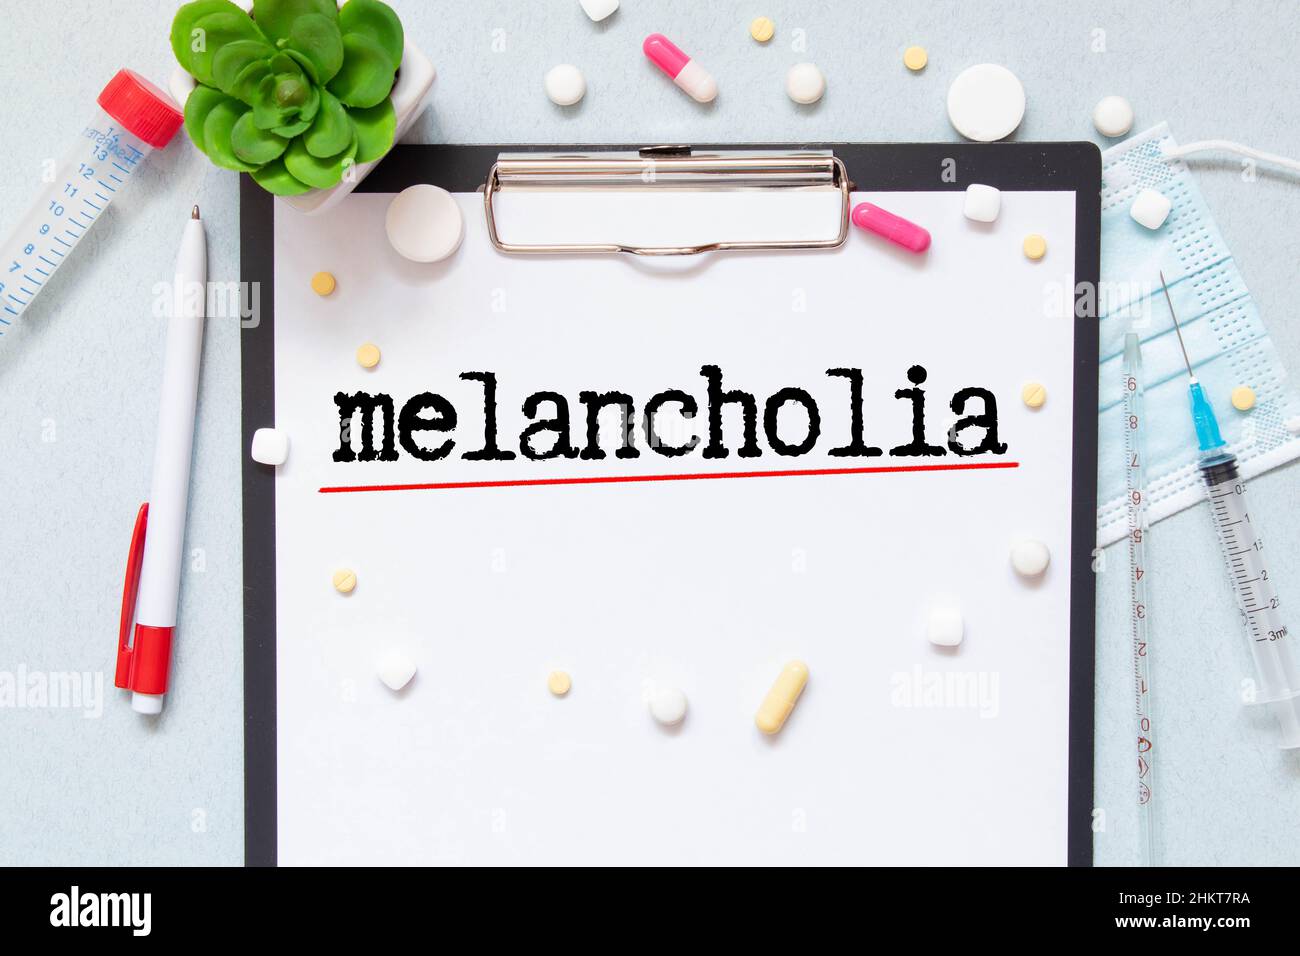 melancholia word write on prescription. Stock Photo